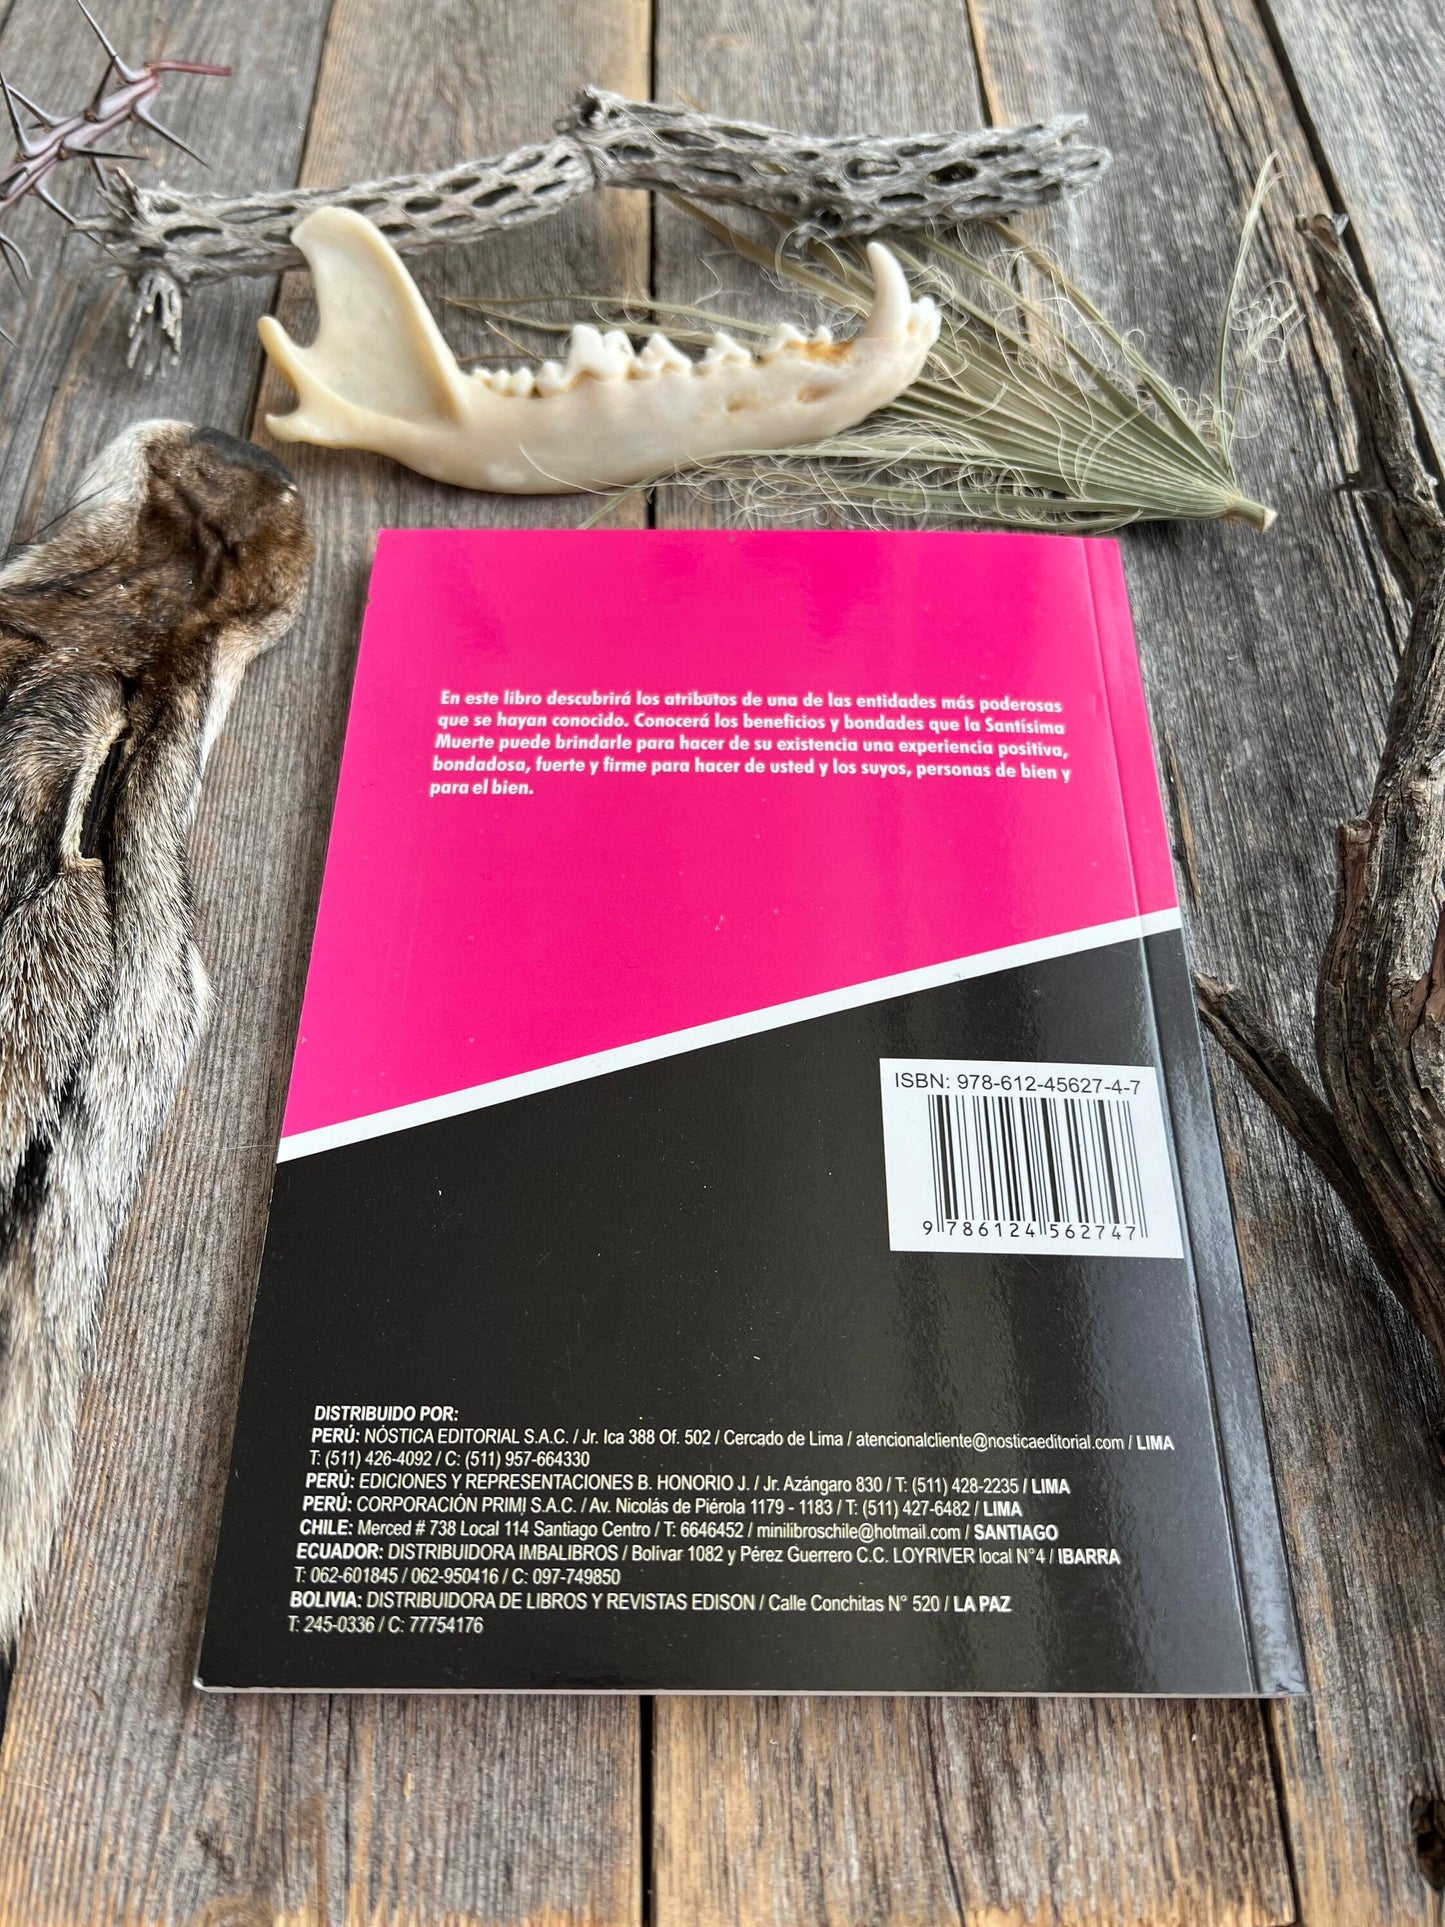 El Libro de La Santa Muerte + New Book From Mexico